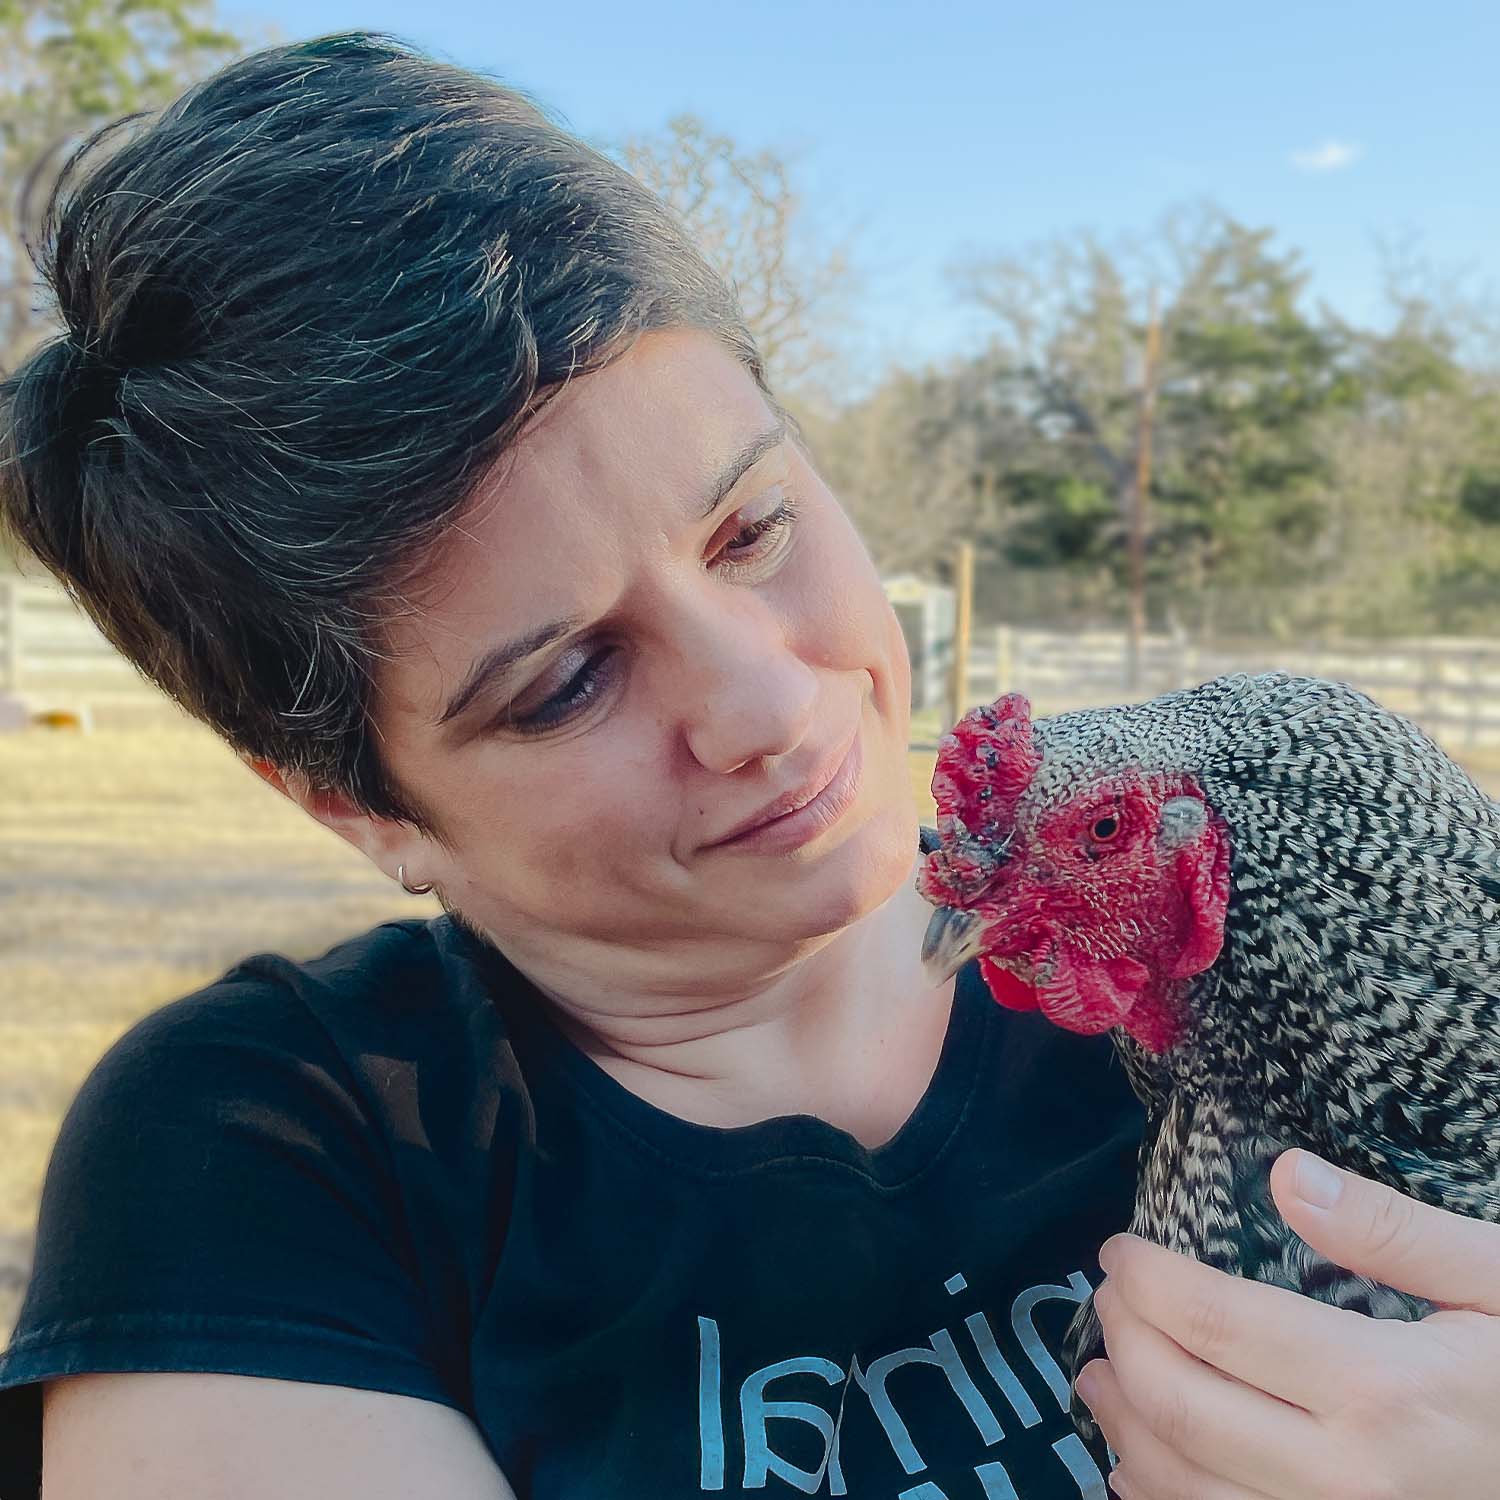 Sharon holding chicken